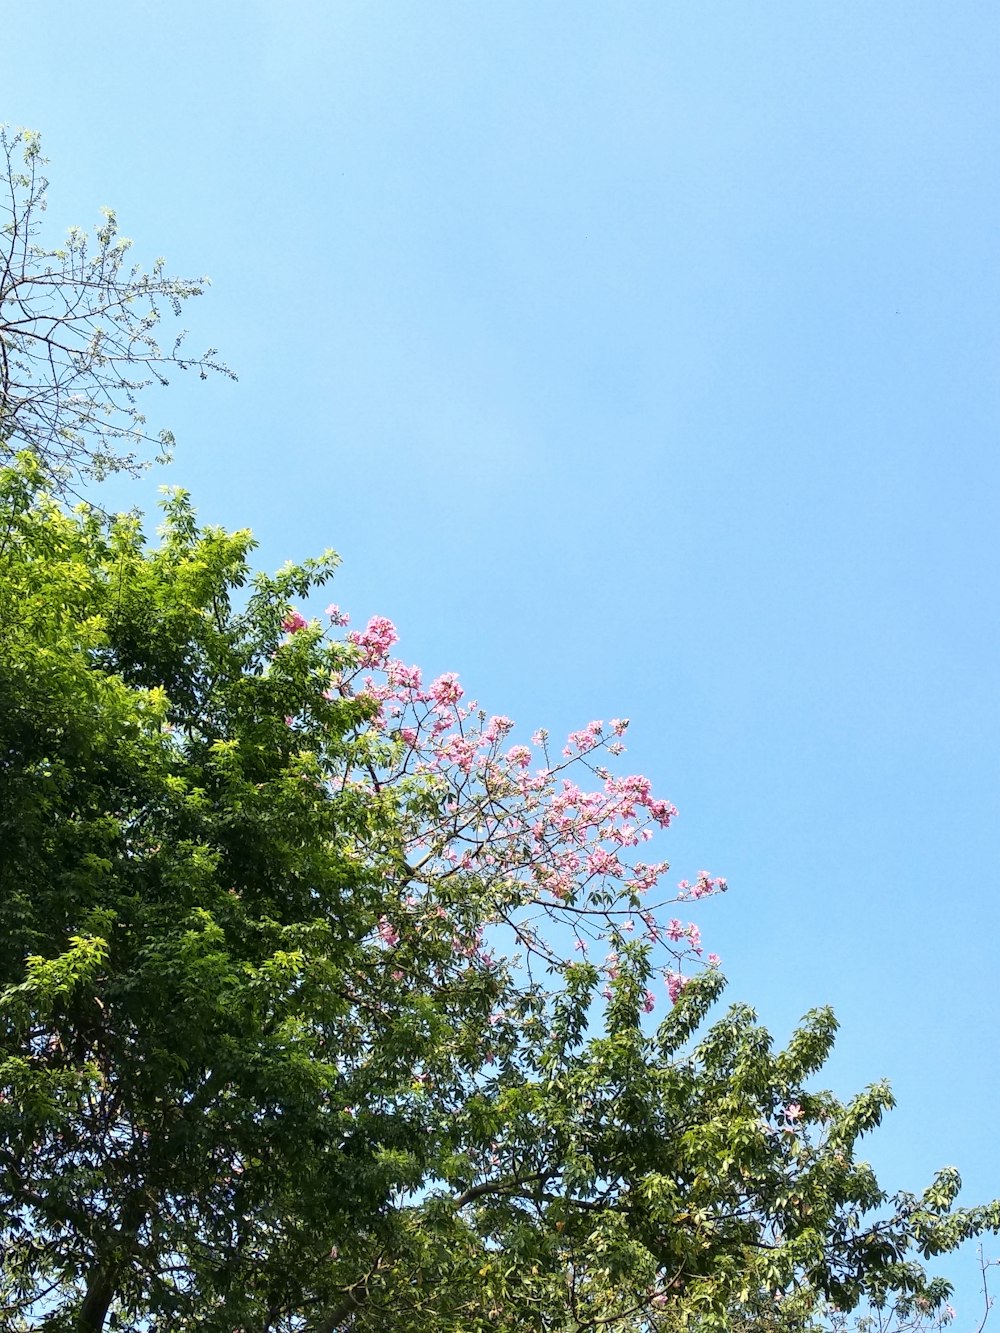 잔잔한 푸른 하늘 아래 녹색 잎 분홍색 꽃잎 꽃이 만발한 나무